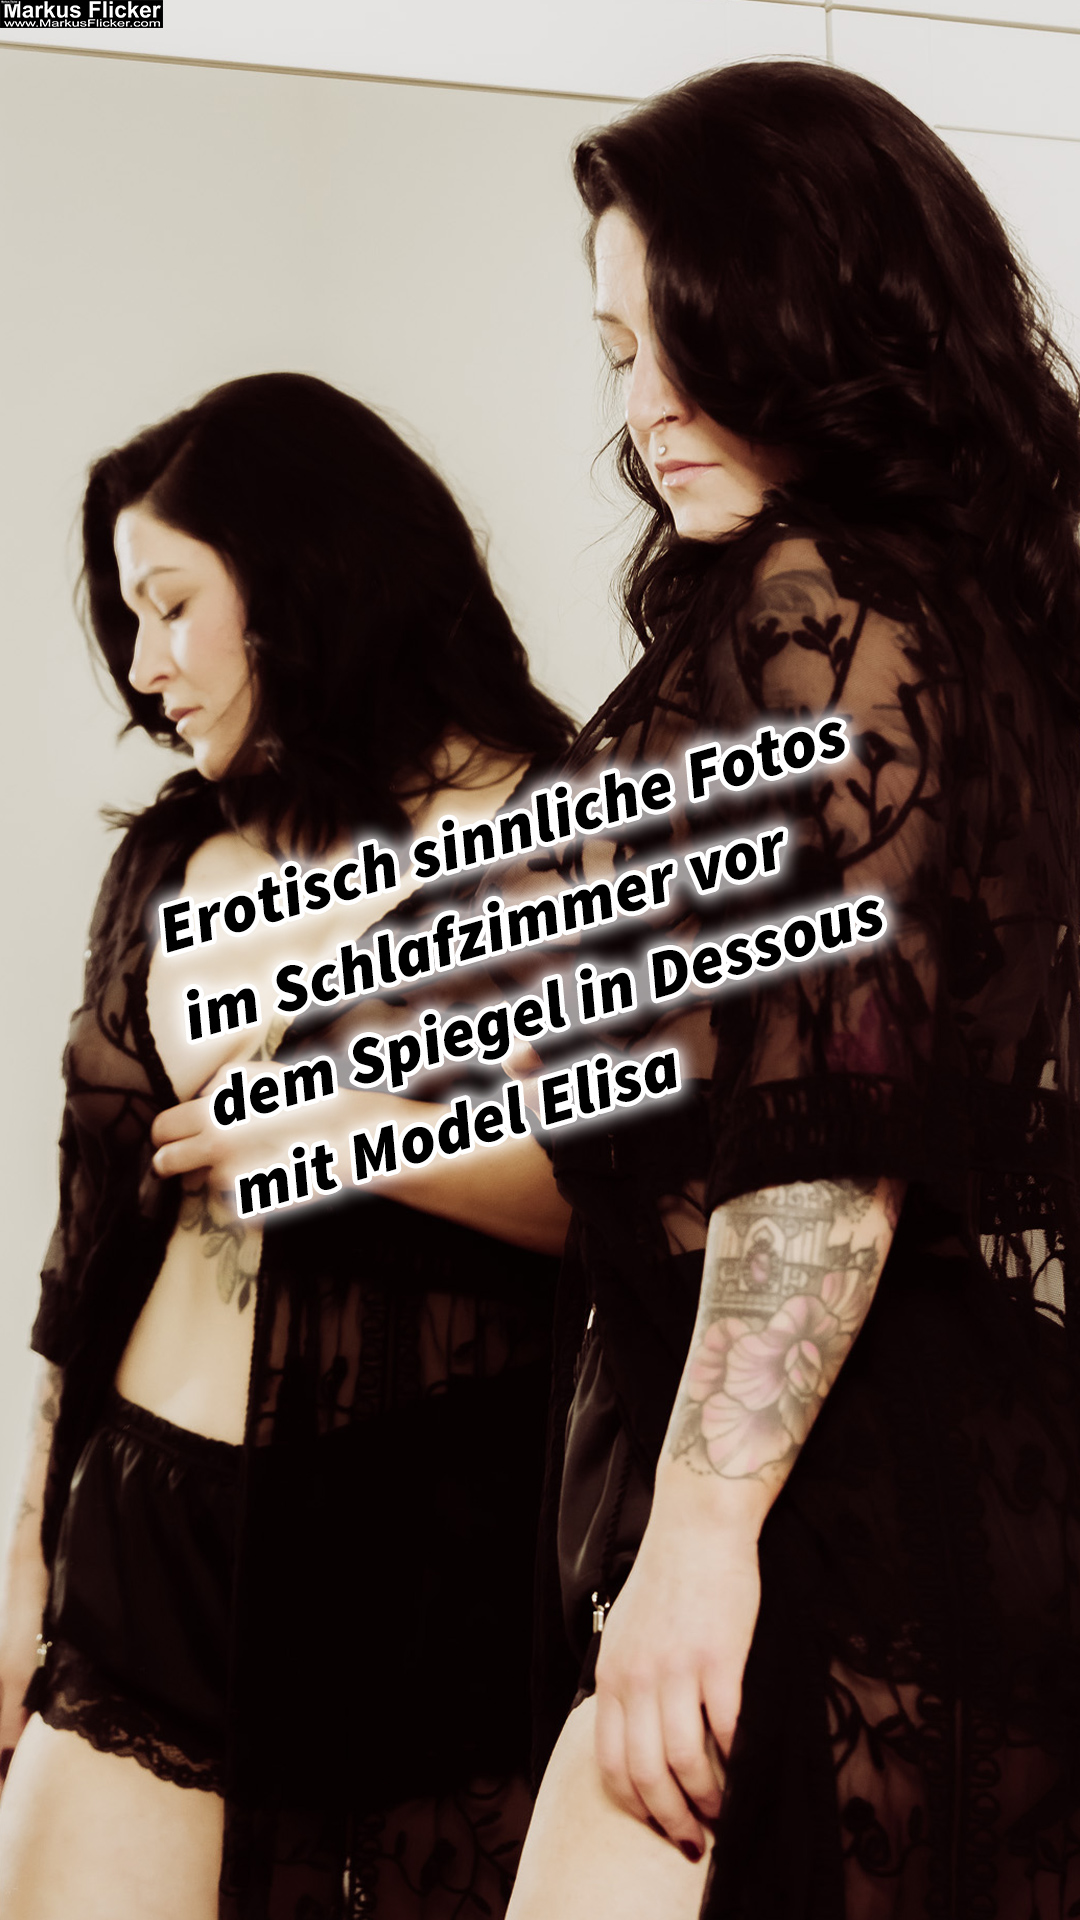 Erotisch sinnliche Fotos im Schlafzimmer vor dem Spiegel in Dessous mit Female Model Elisa Graz Steiermark Österreich